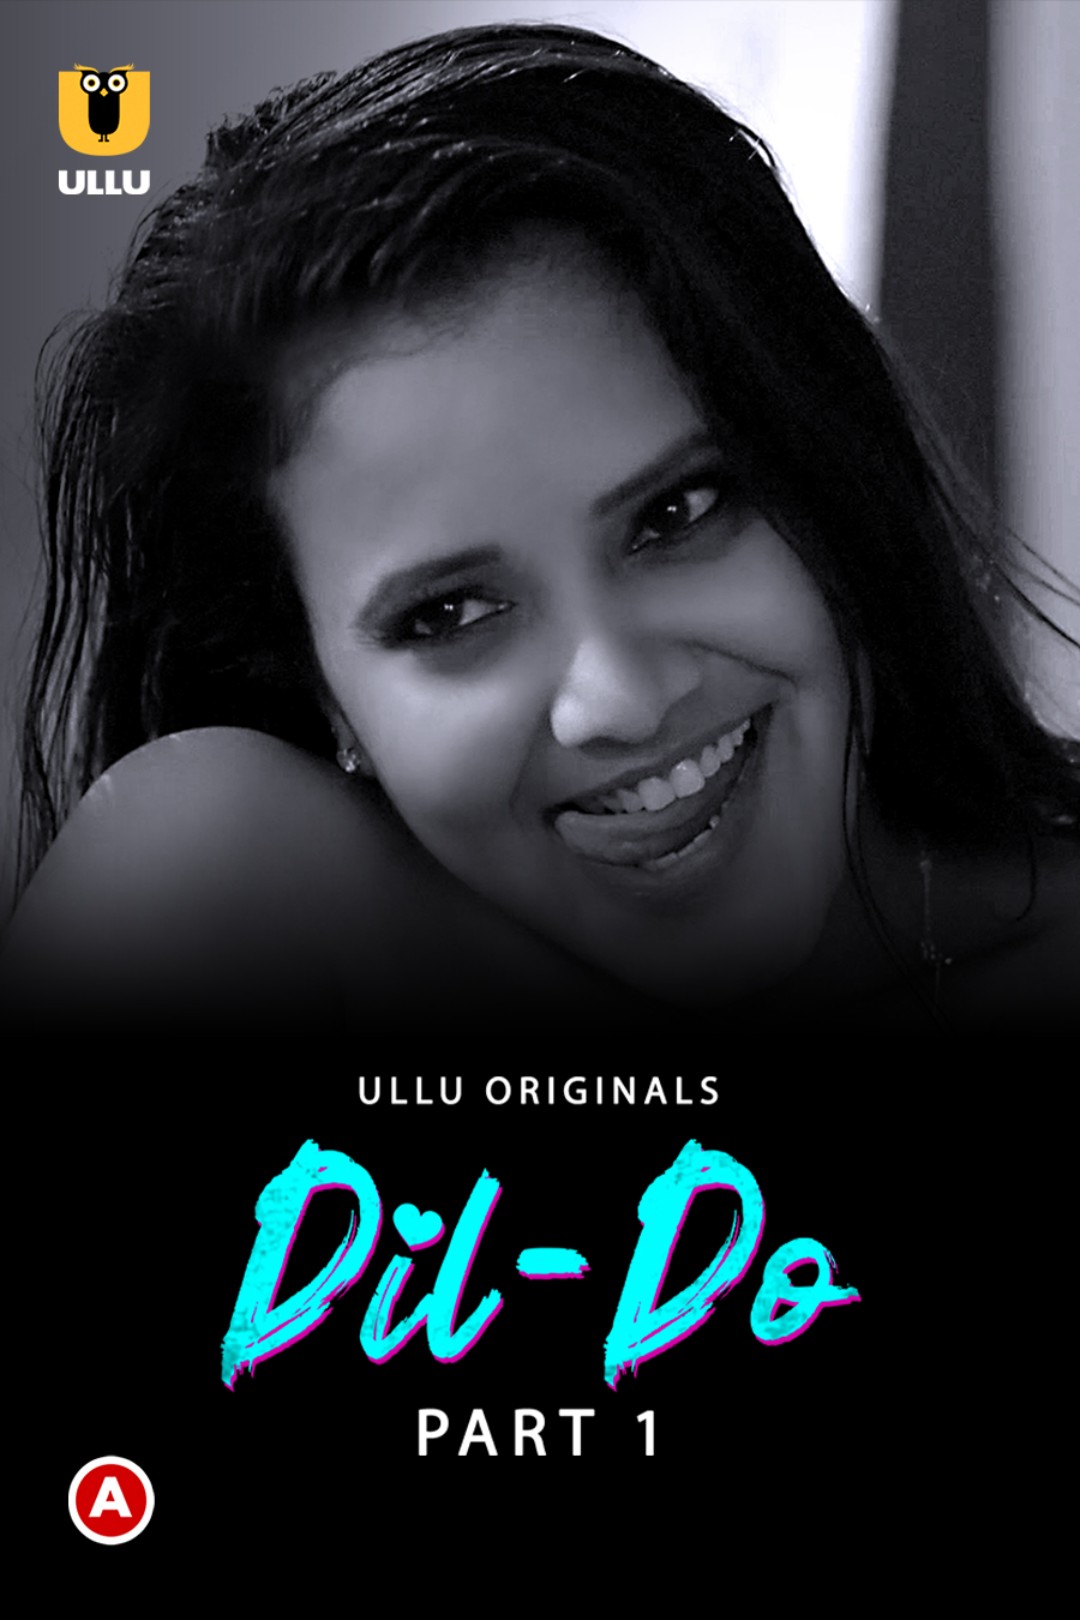 Download DIL Do 2022 Part 1 (2022) WEB DL Hindi ULLU 1080p [1.0GB] | 720p [450MB] | 480p [210MB] download